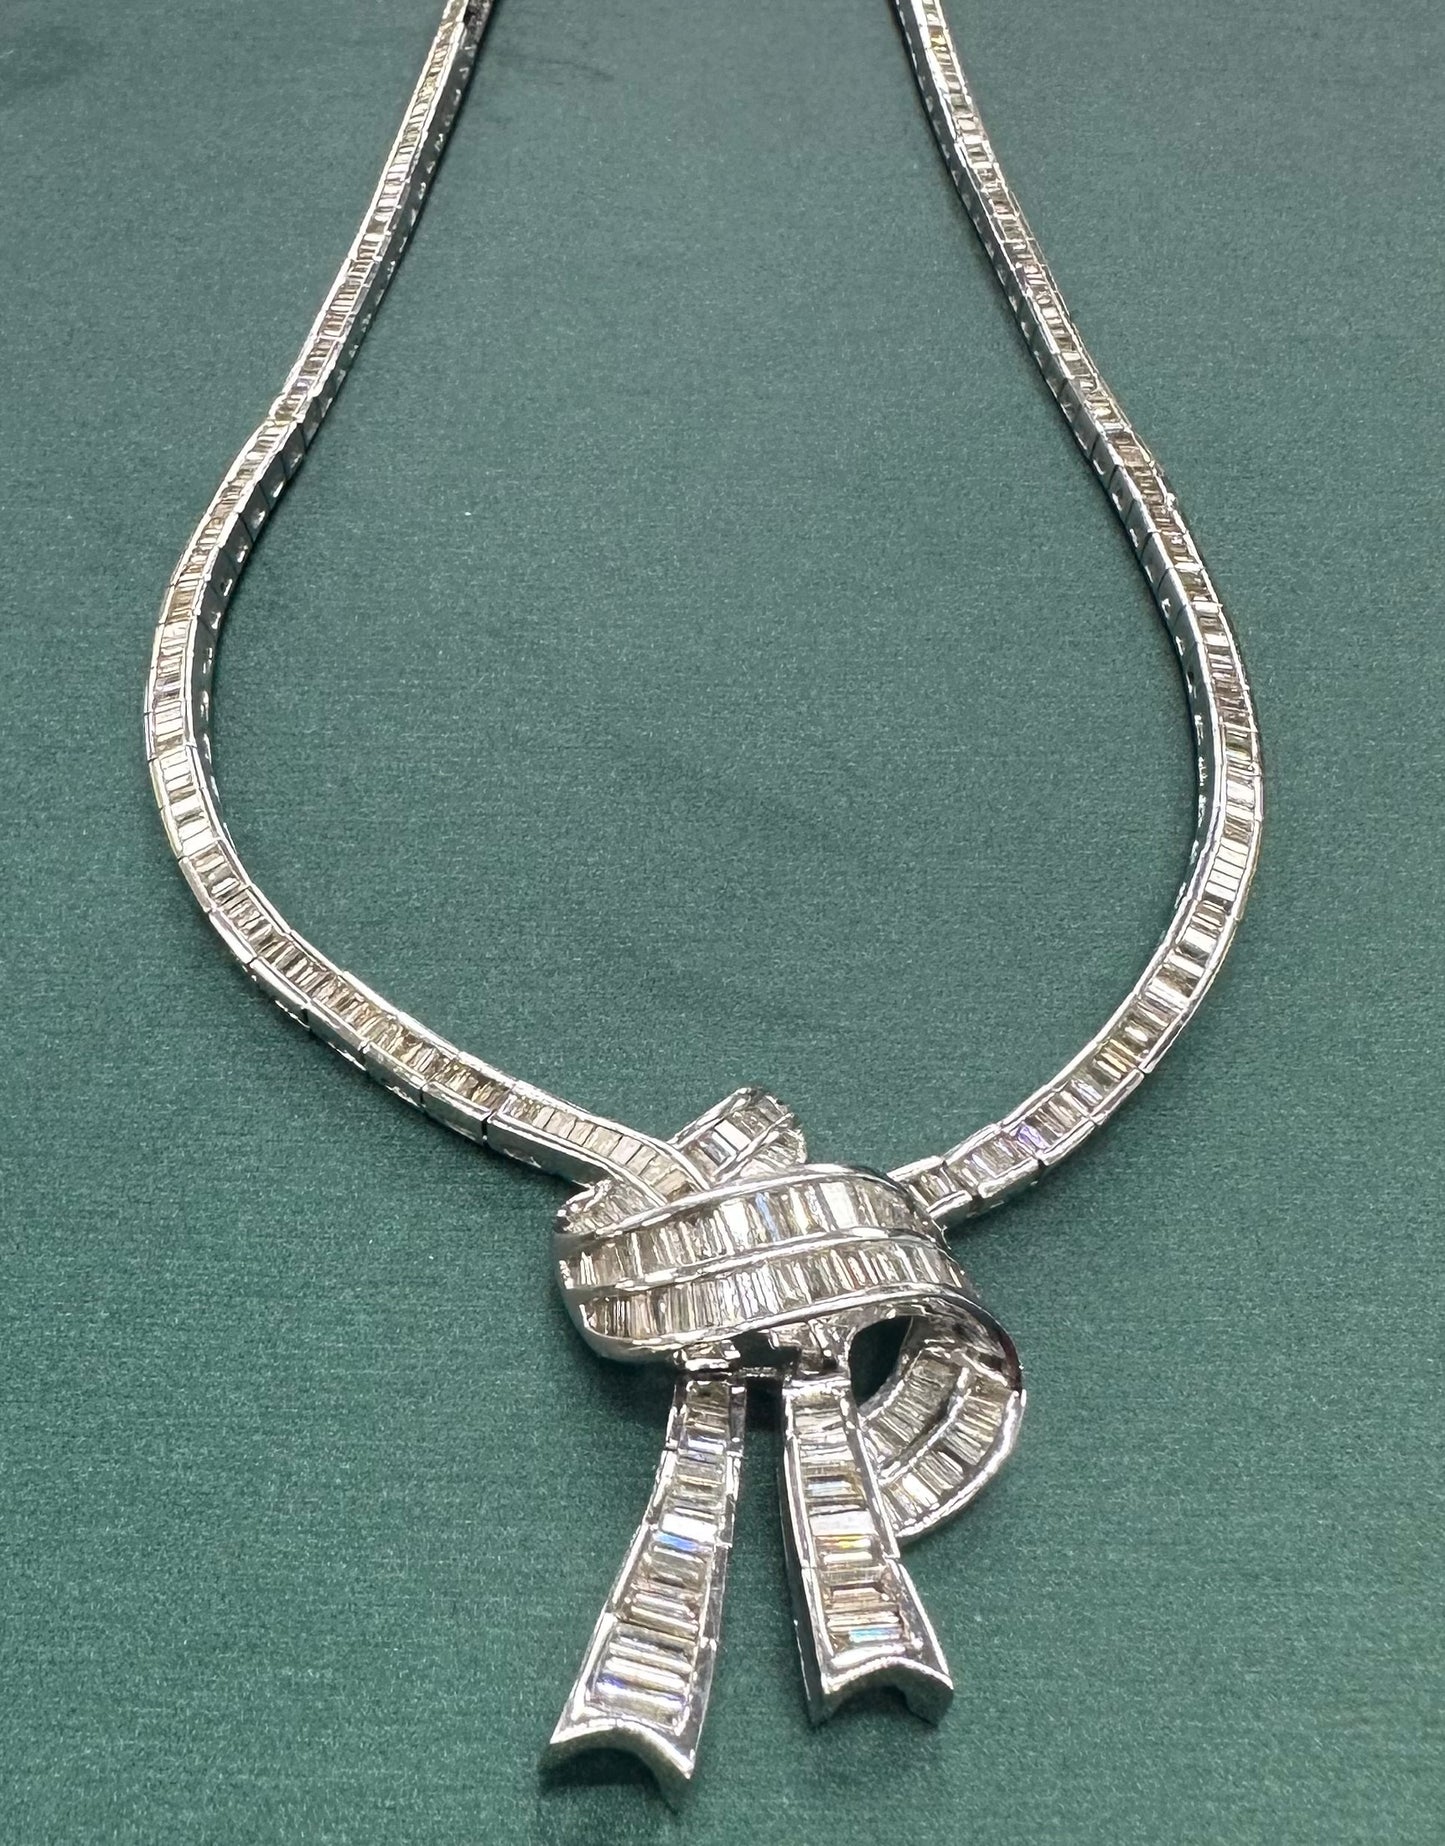 Diamond Baguette bow necklace